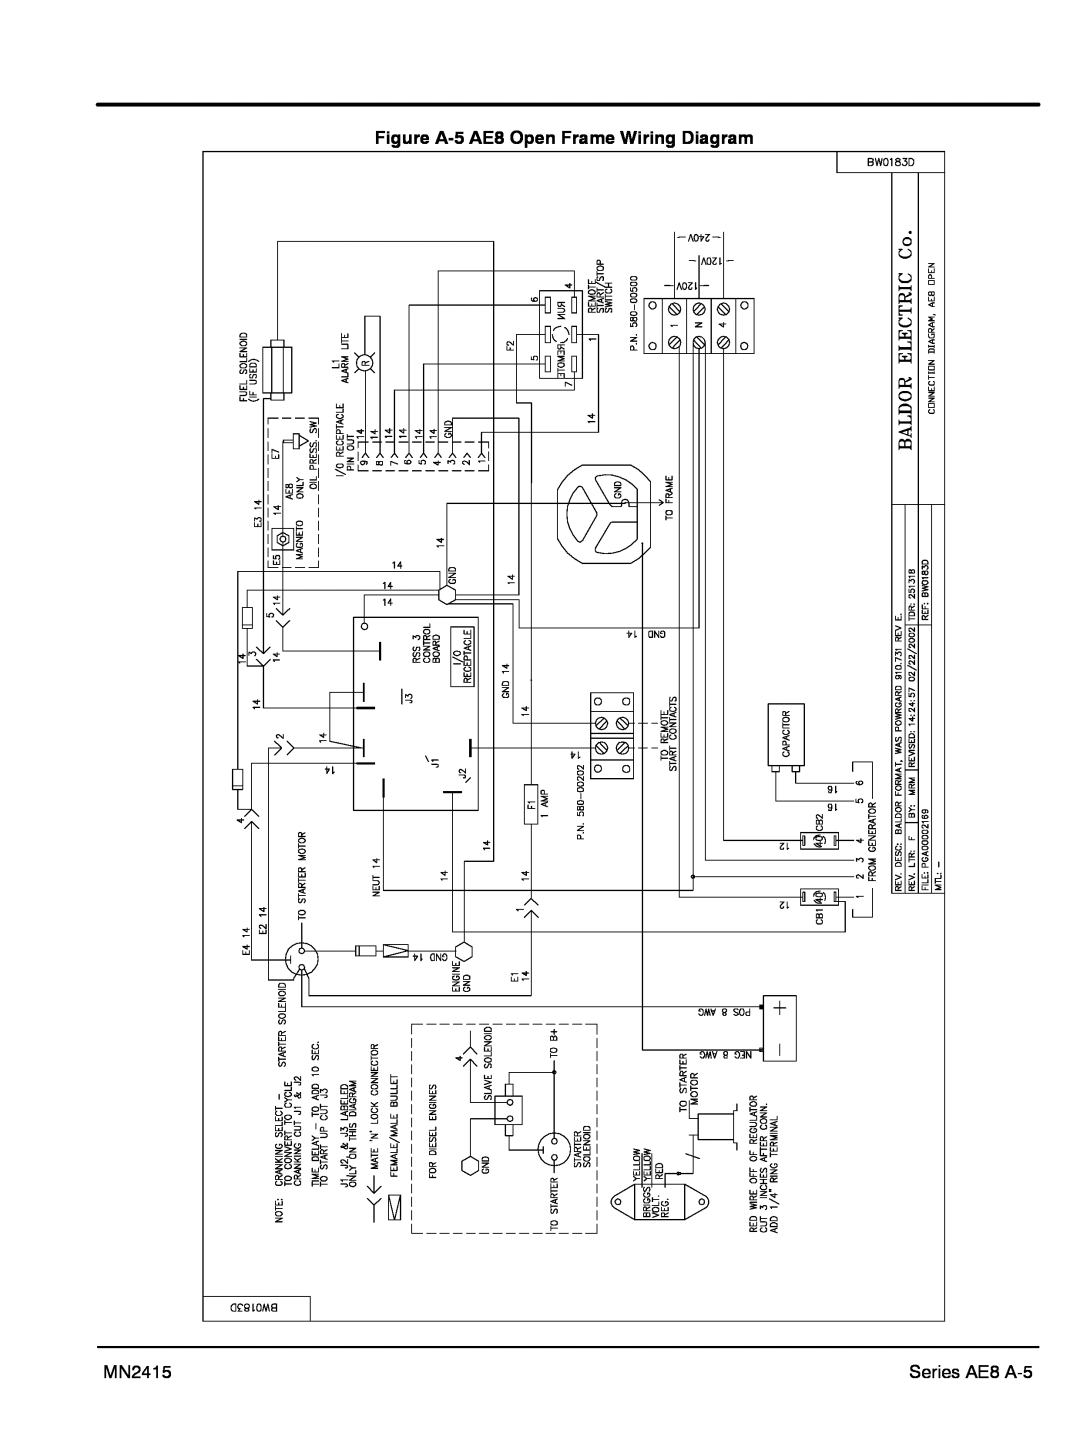 Baldor AE10, AE11, AE25 manual Figure A-5 AE8 Open Frame Wiring Diagram, MN2415, Series AE8 A-5 